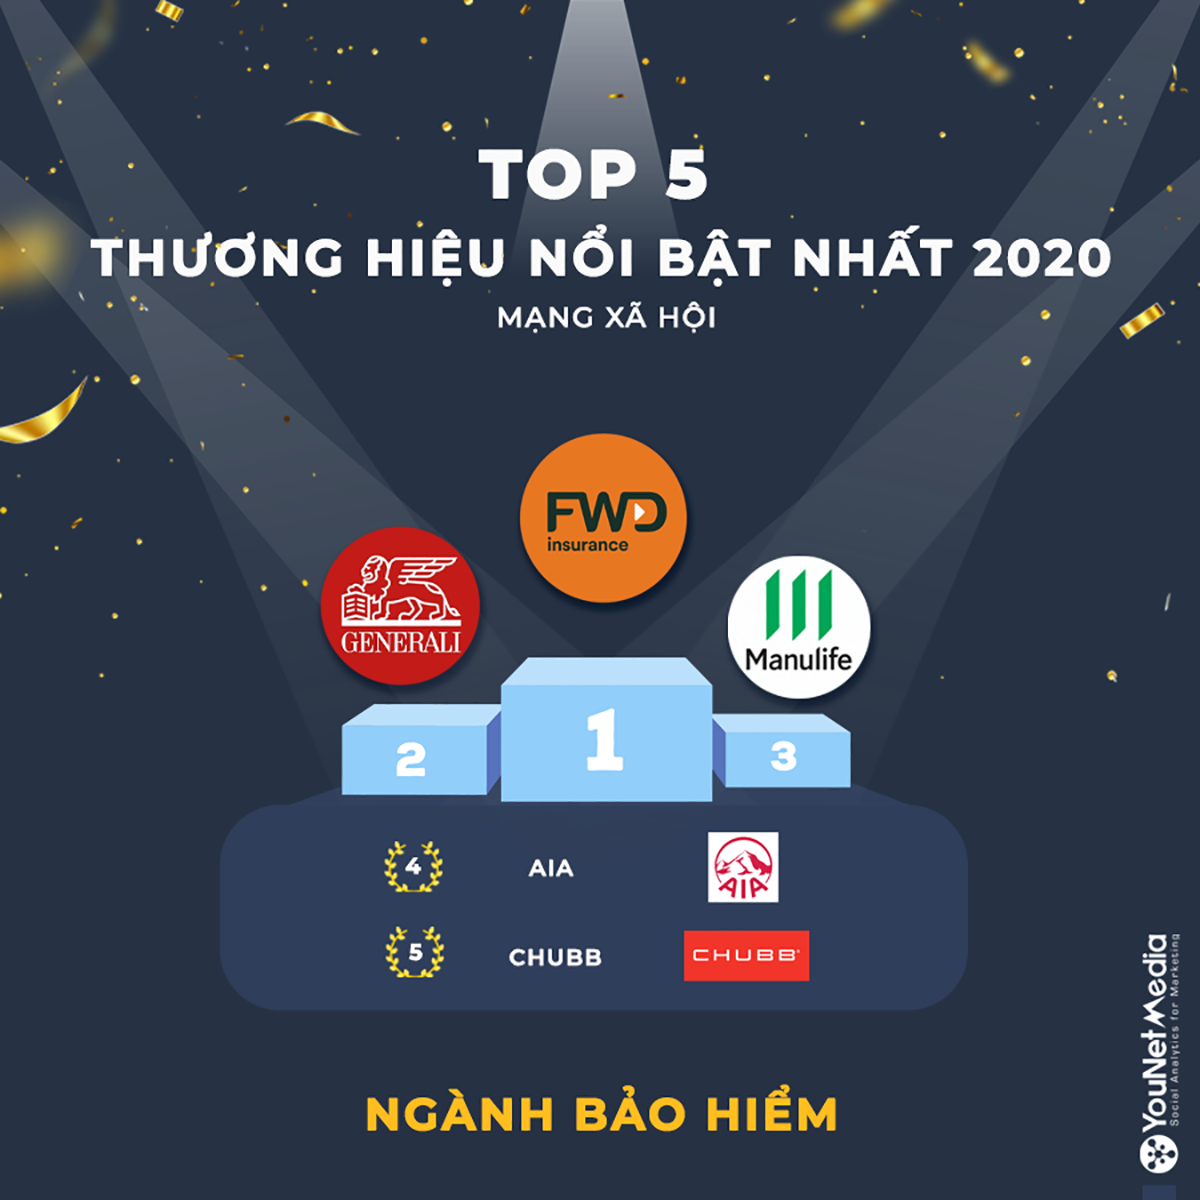 Với các chiến dịch nổi bật, FWD là thương hiệu của năm 2020 ngành Bảo hiểm (Nguồn: YouNet Media - Số liệu trong BXH được thống kê bởi công cụ SocialHeat của YouNet Media)